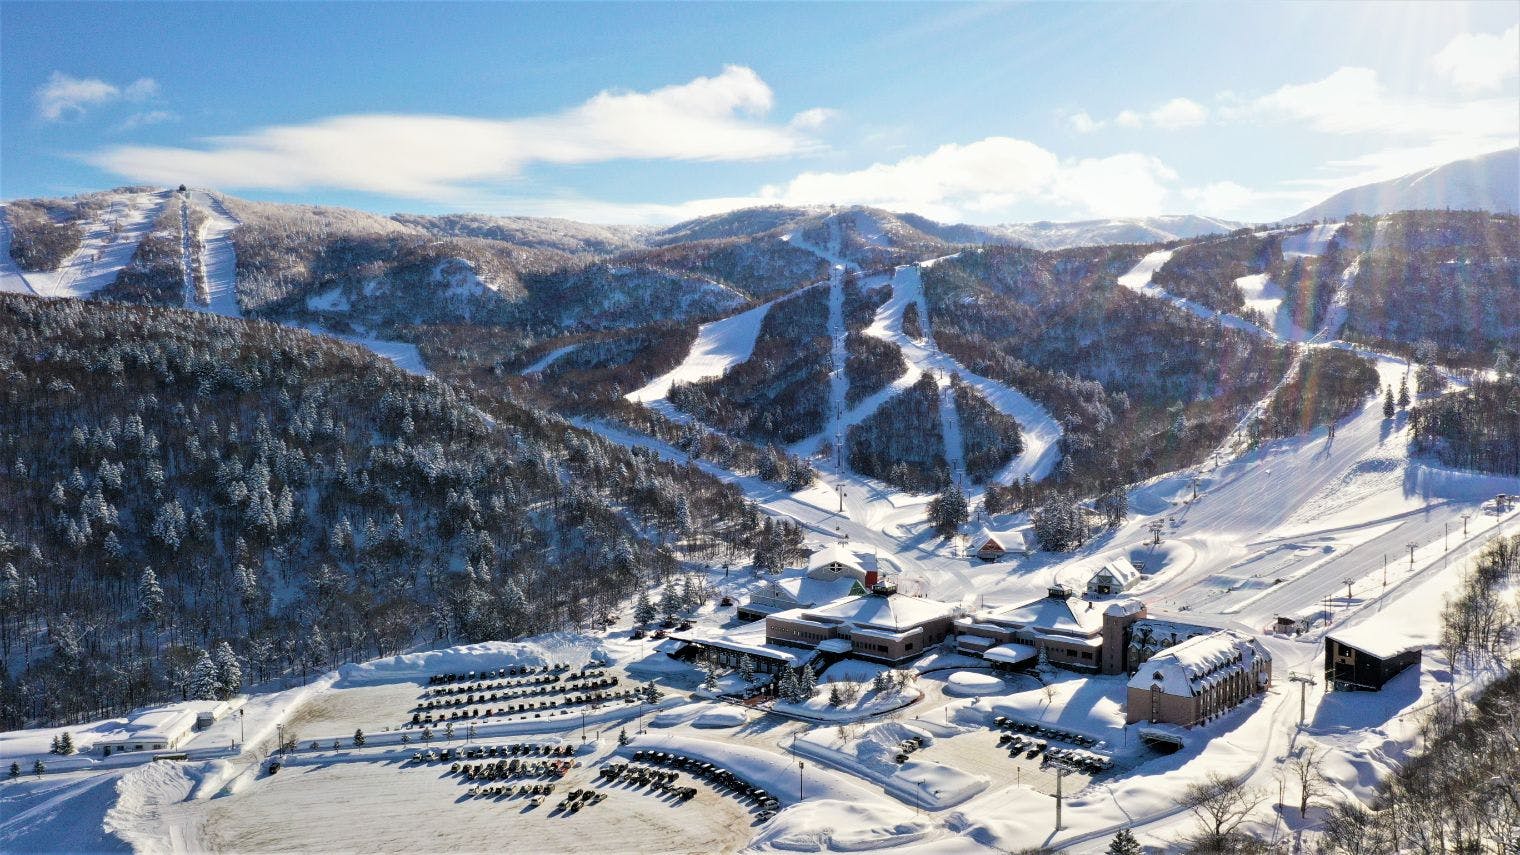 北海道のスキー場の割引チケット予約 おすすめランキング - アソビュー！